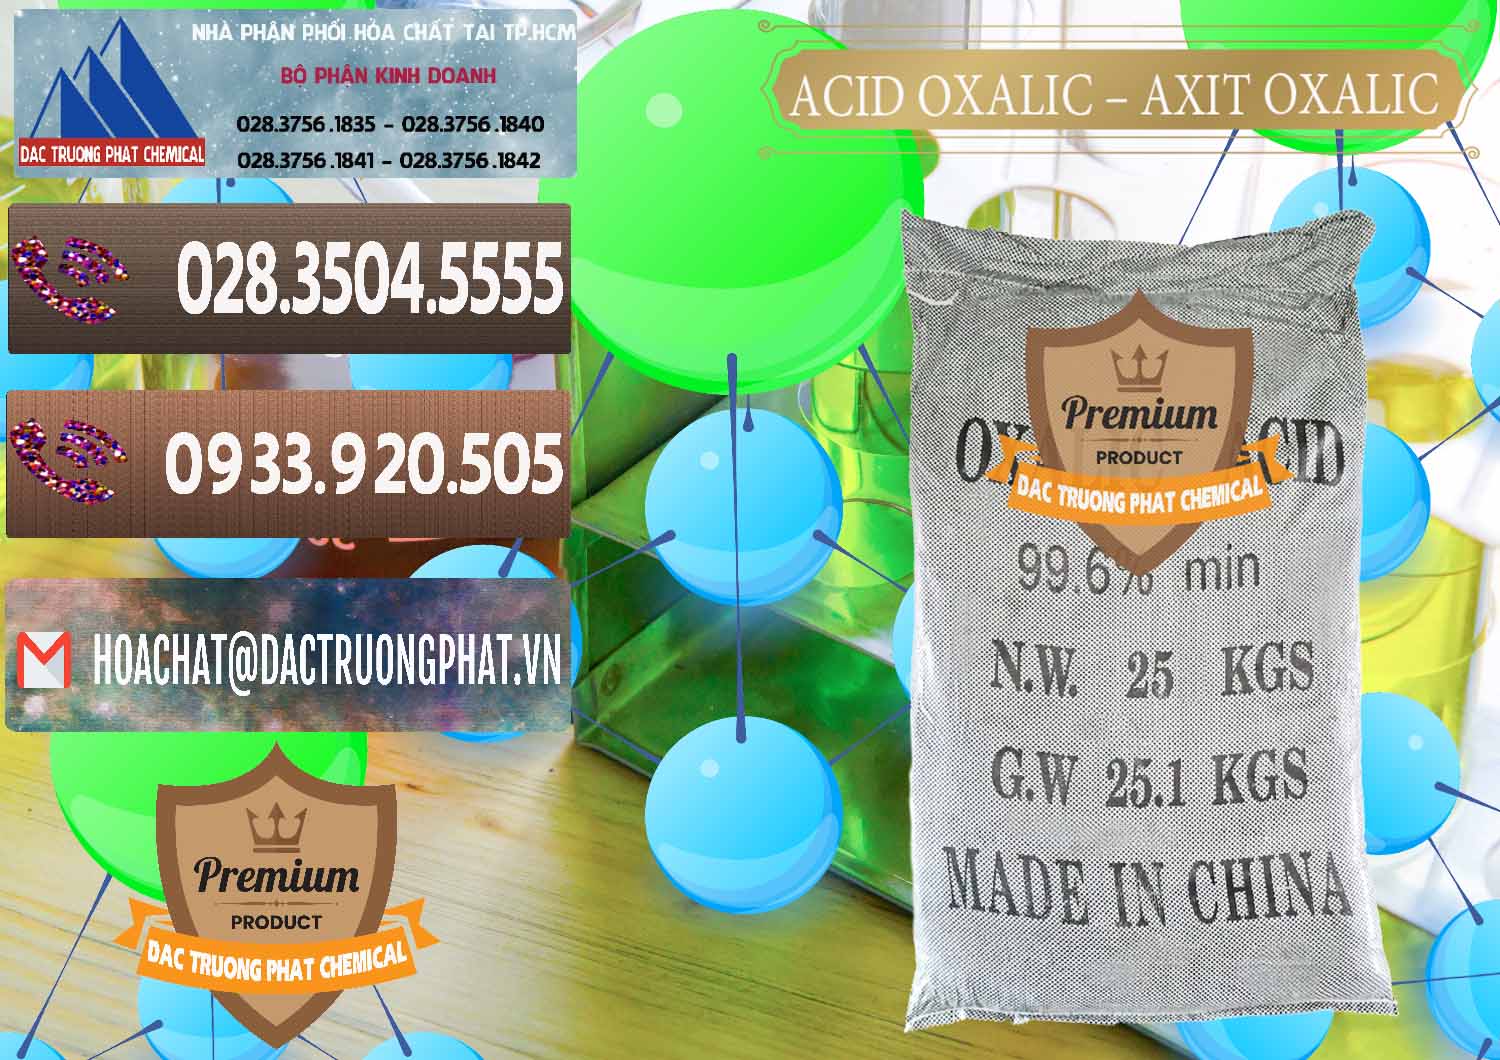 Công ty phân phối - bán Acid Oxalic – Axit Oxalic 99.6% Trung Quốc China - 0014 - Chuyên bán & phân phối hóa chất tại TP.HCM - hoachatviet.net